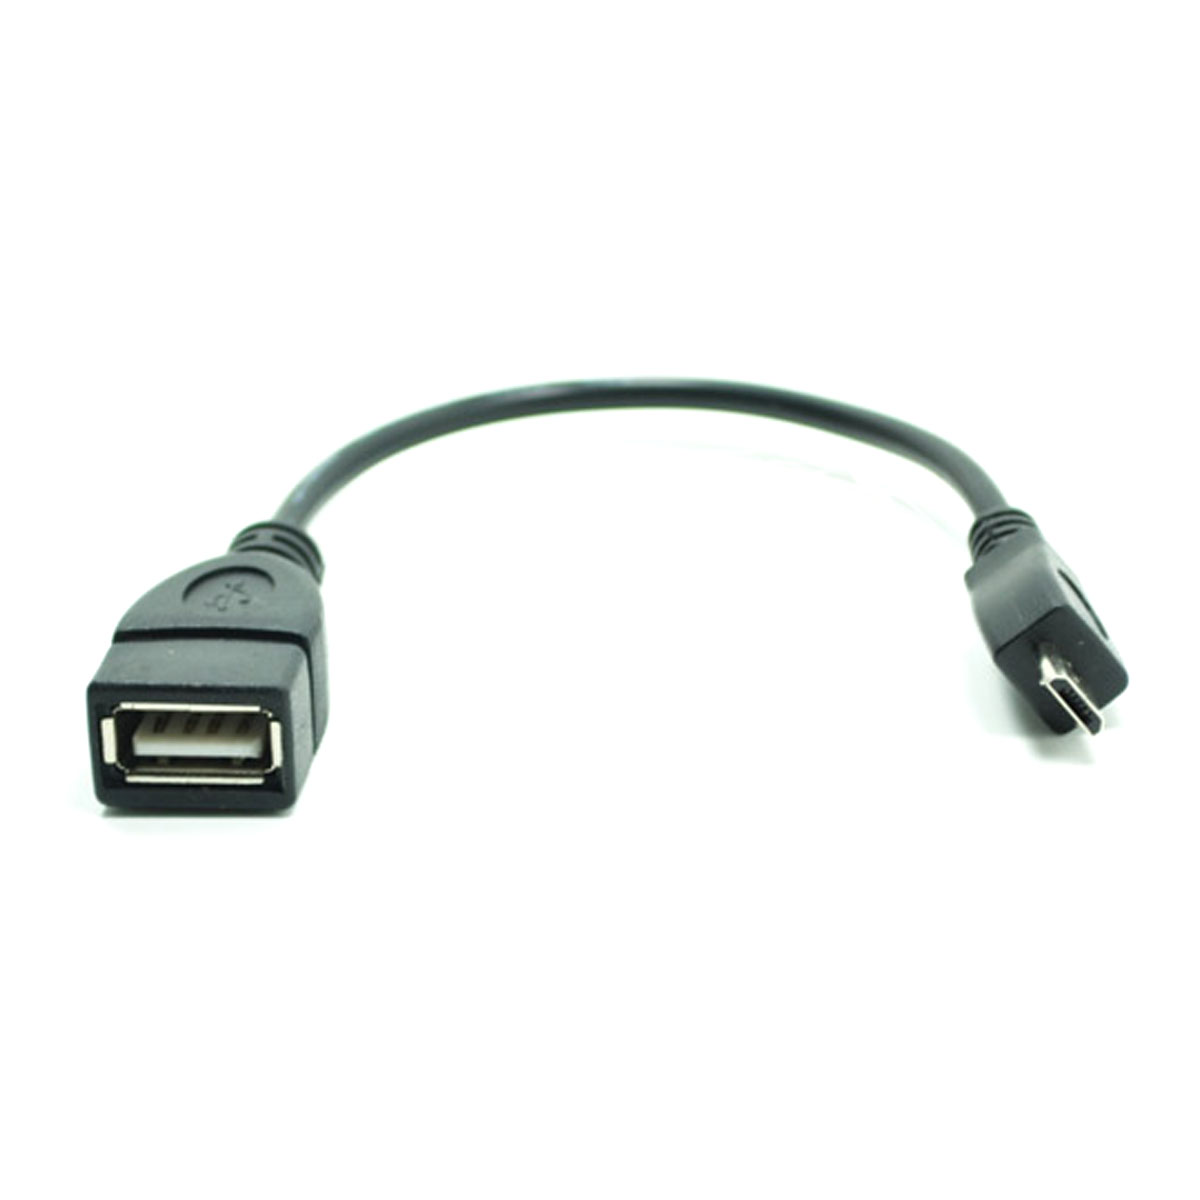 OTG переходник, адаптер, конвертер Micro USB на USB, длина 0.15 метра, цвет черный